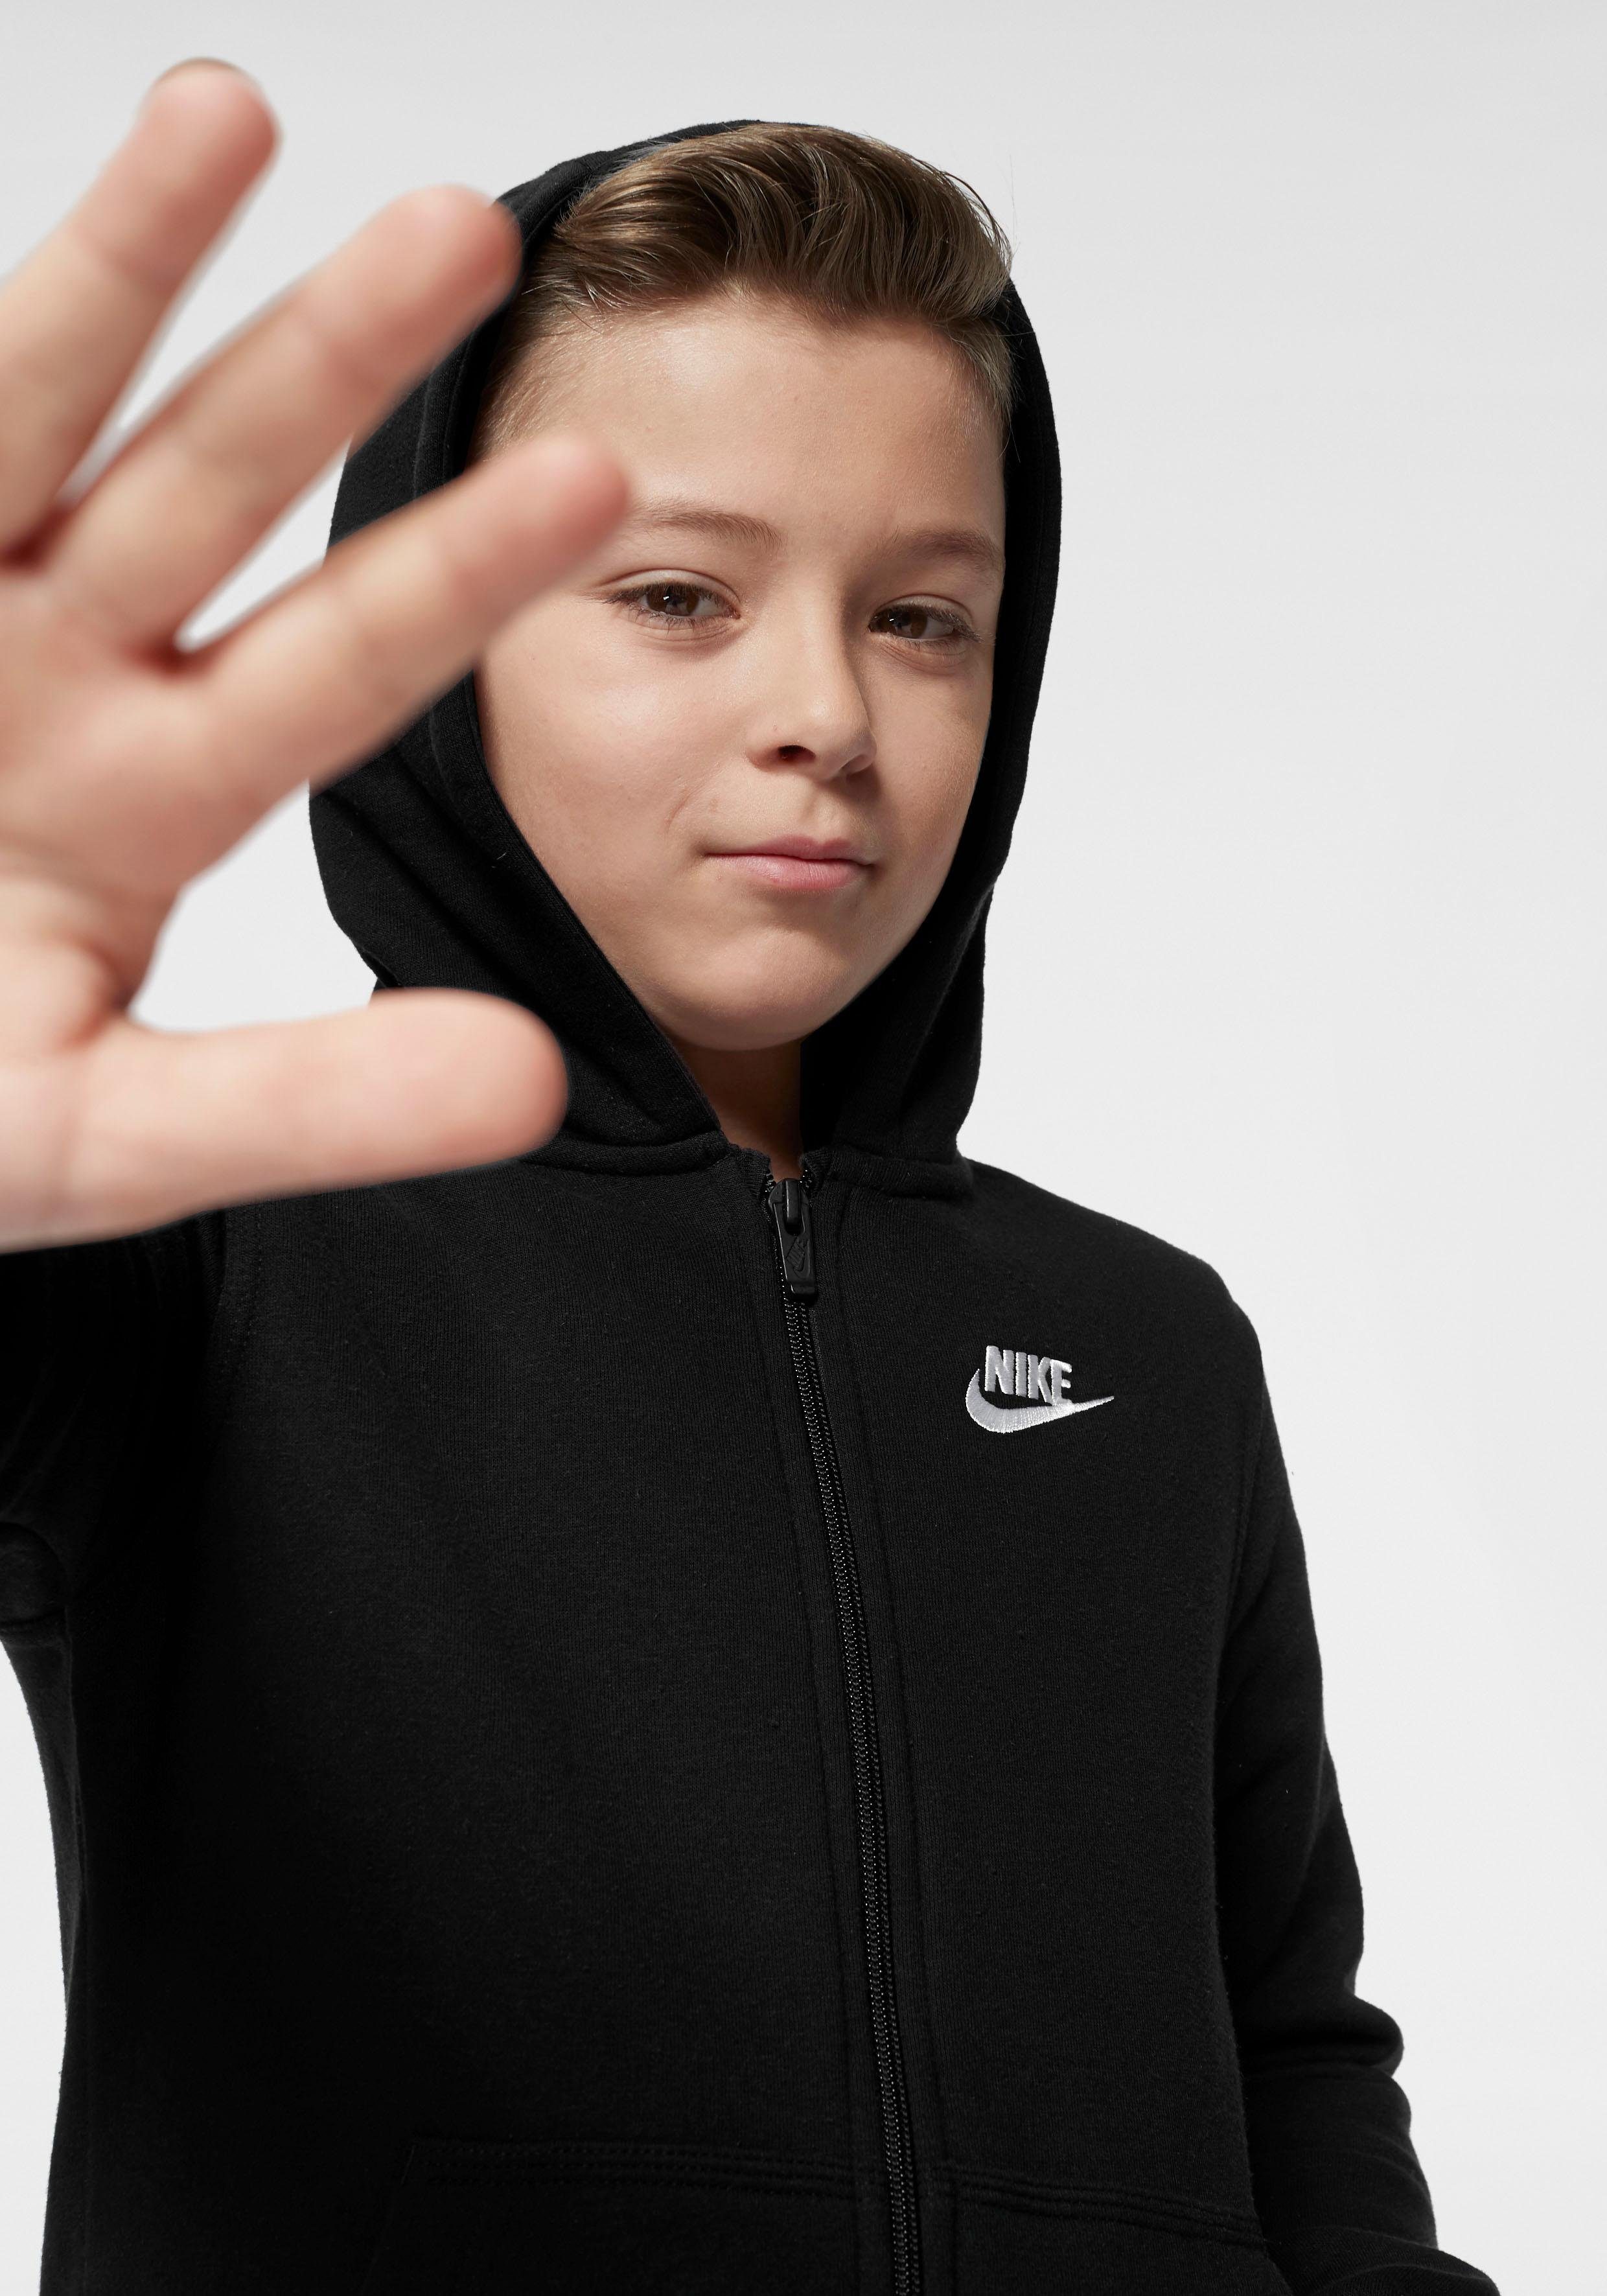 Kinder schwarz HOODIE FZ - Kapuzensweatjacke NSW Sportswear CLUB für Nike